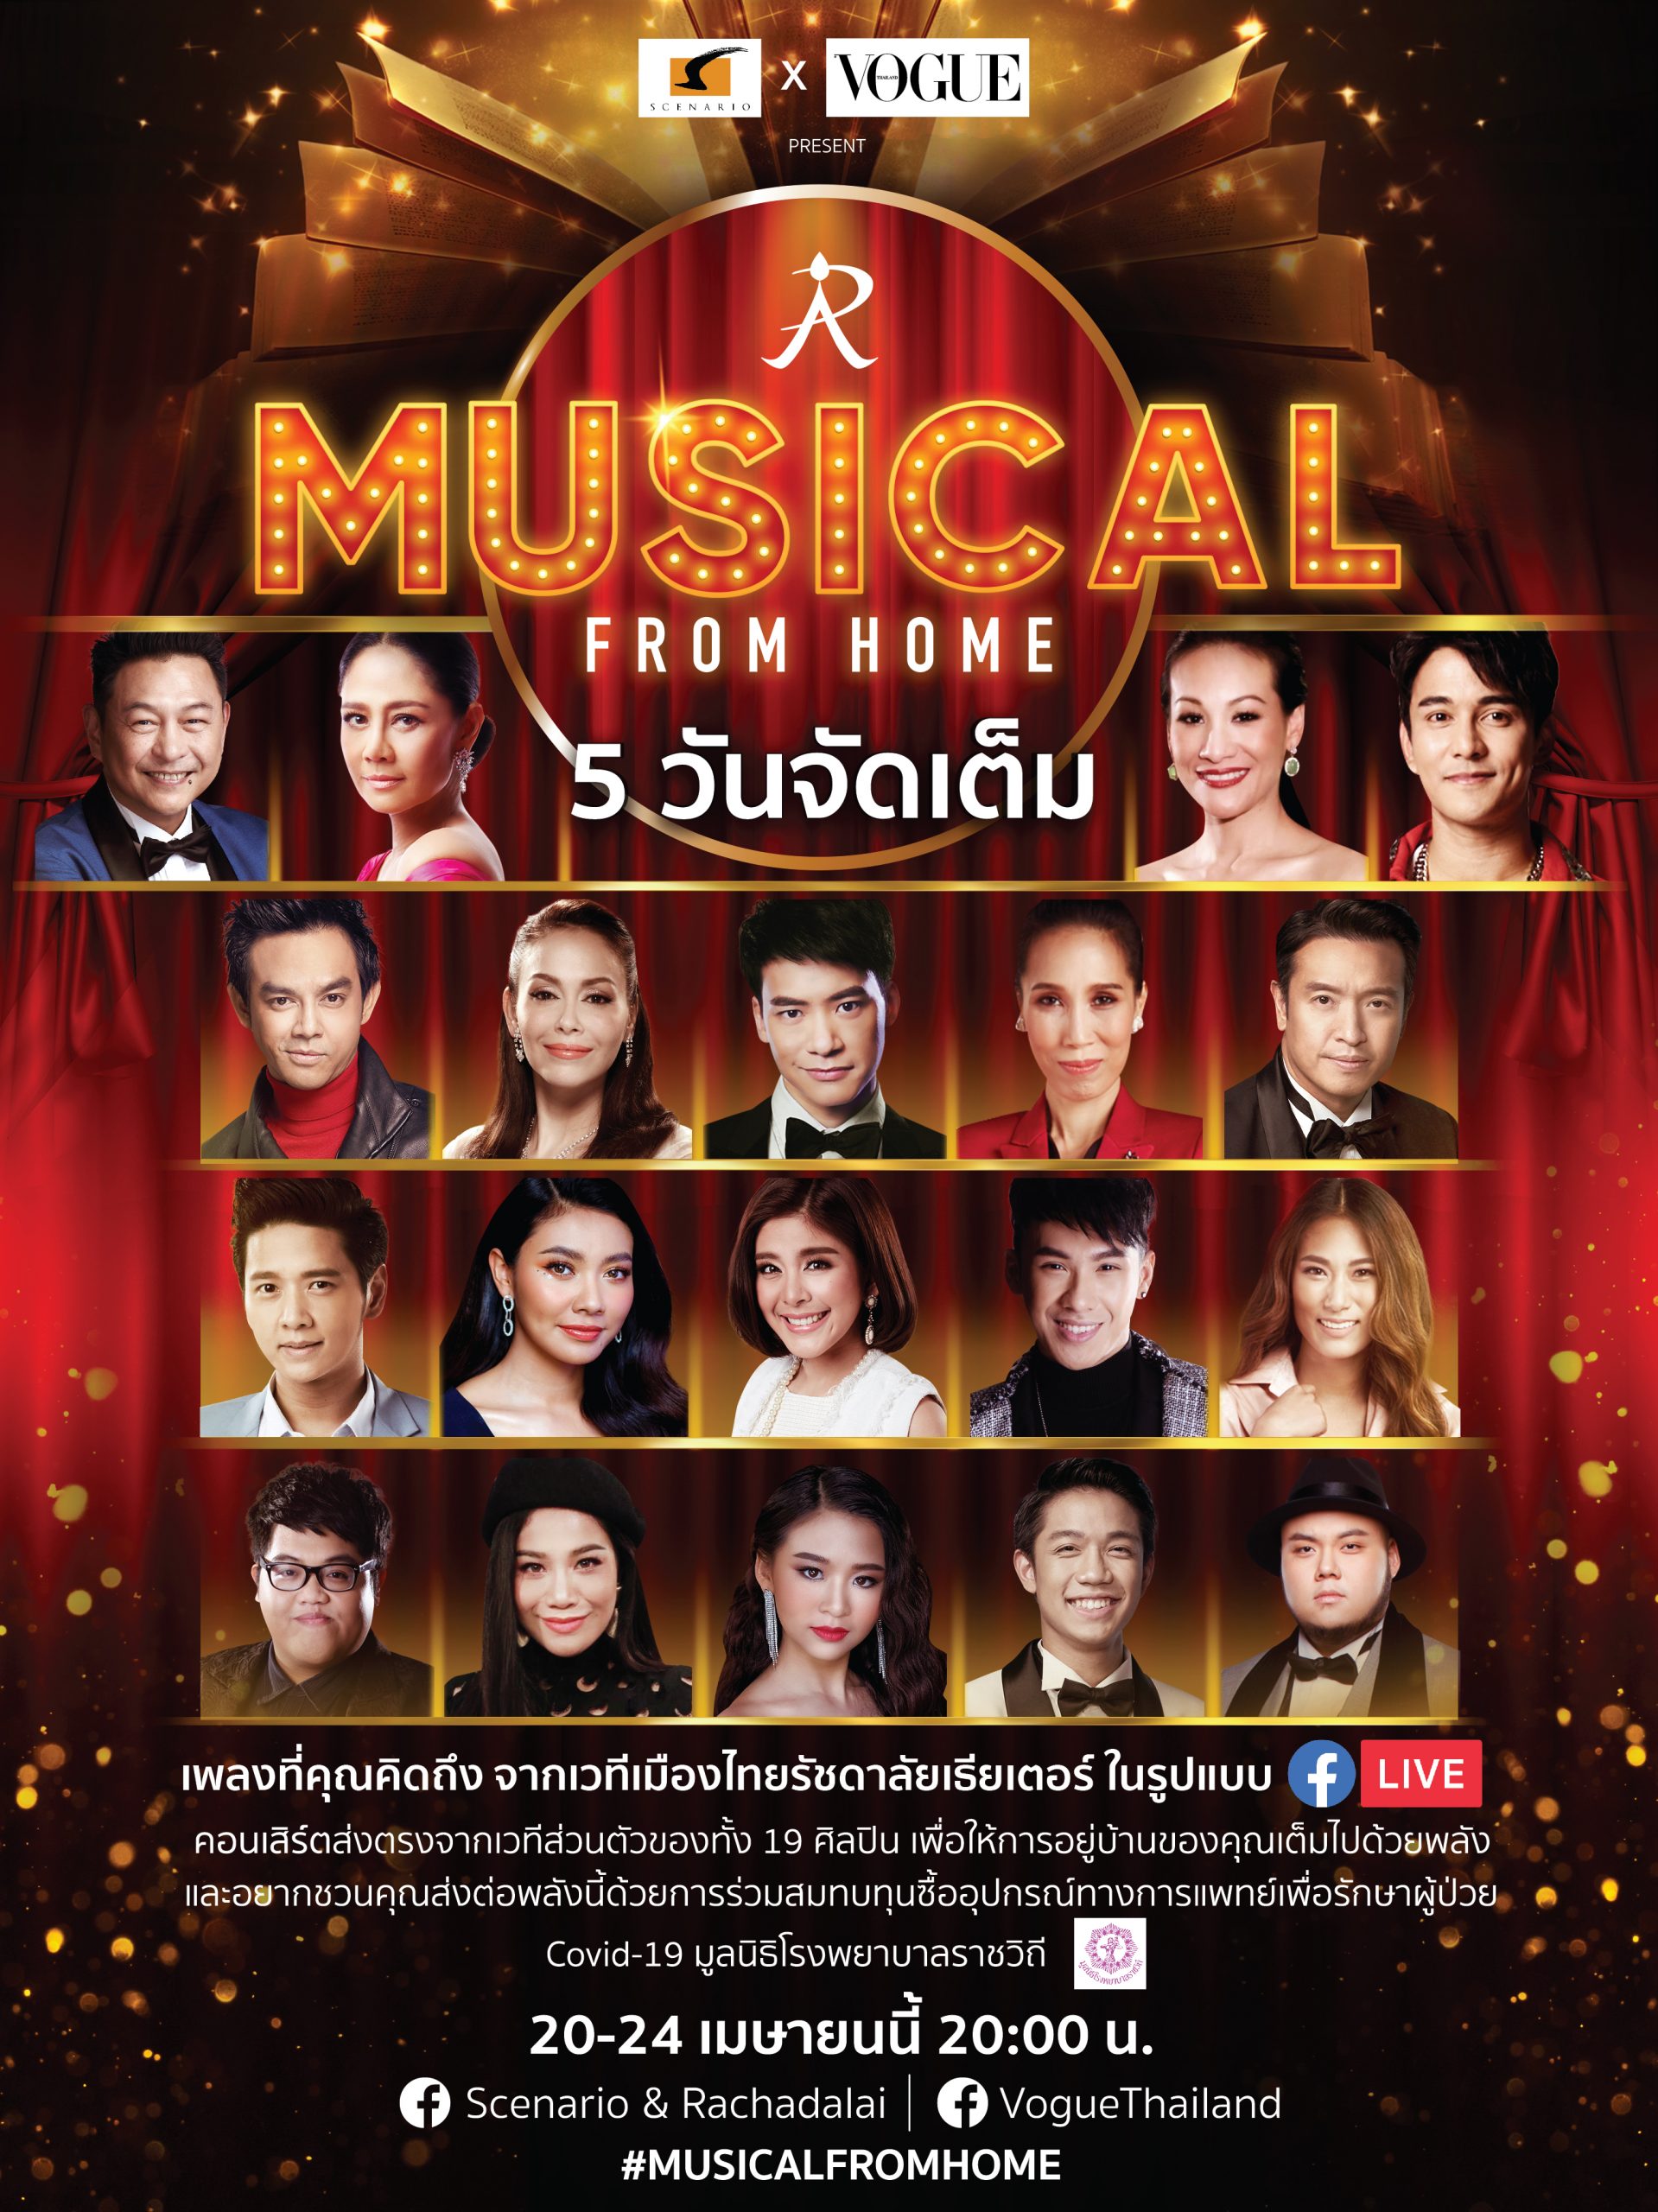 ซีเนริโอจับมือ VOGUE THAILANDผุดโปรเจกต์ MUSICAL FROM HOMEกับคอนเสิร์ตออนไลน์ ระดมทุนสู้ภัย โควิด-19